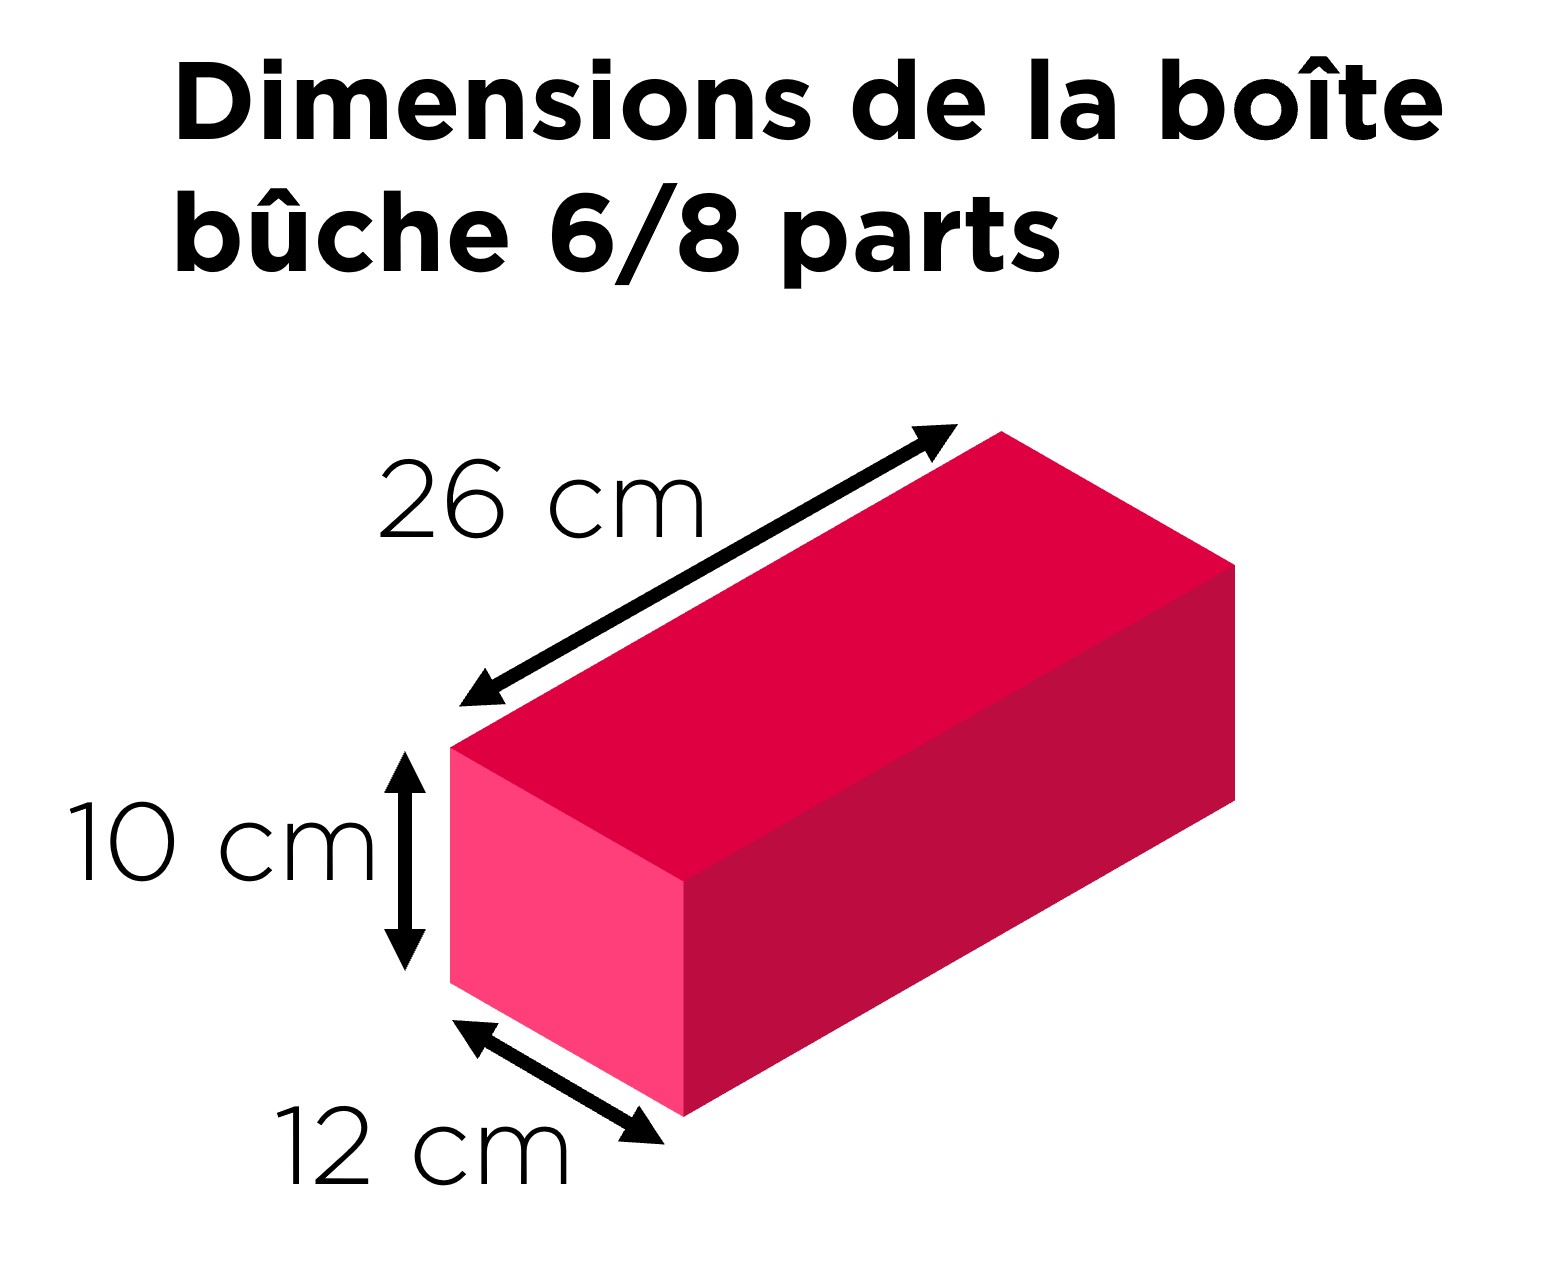 dimensions de la boite